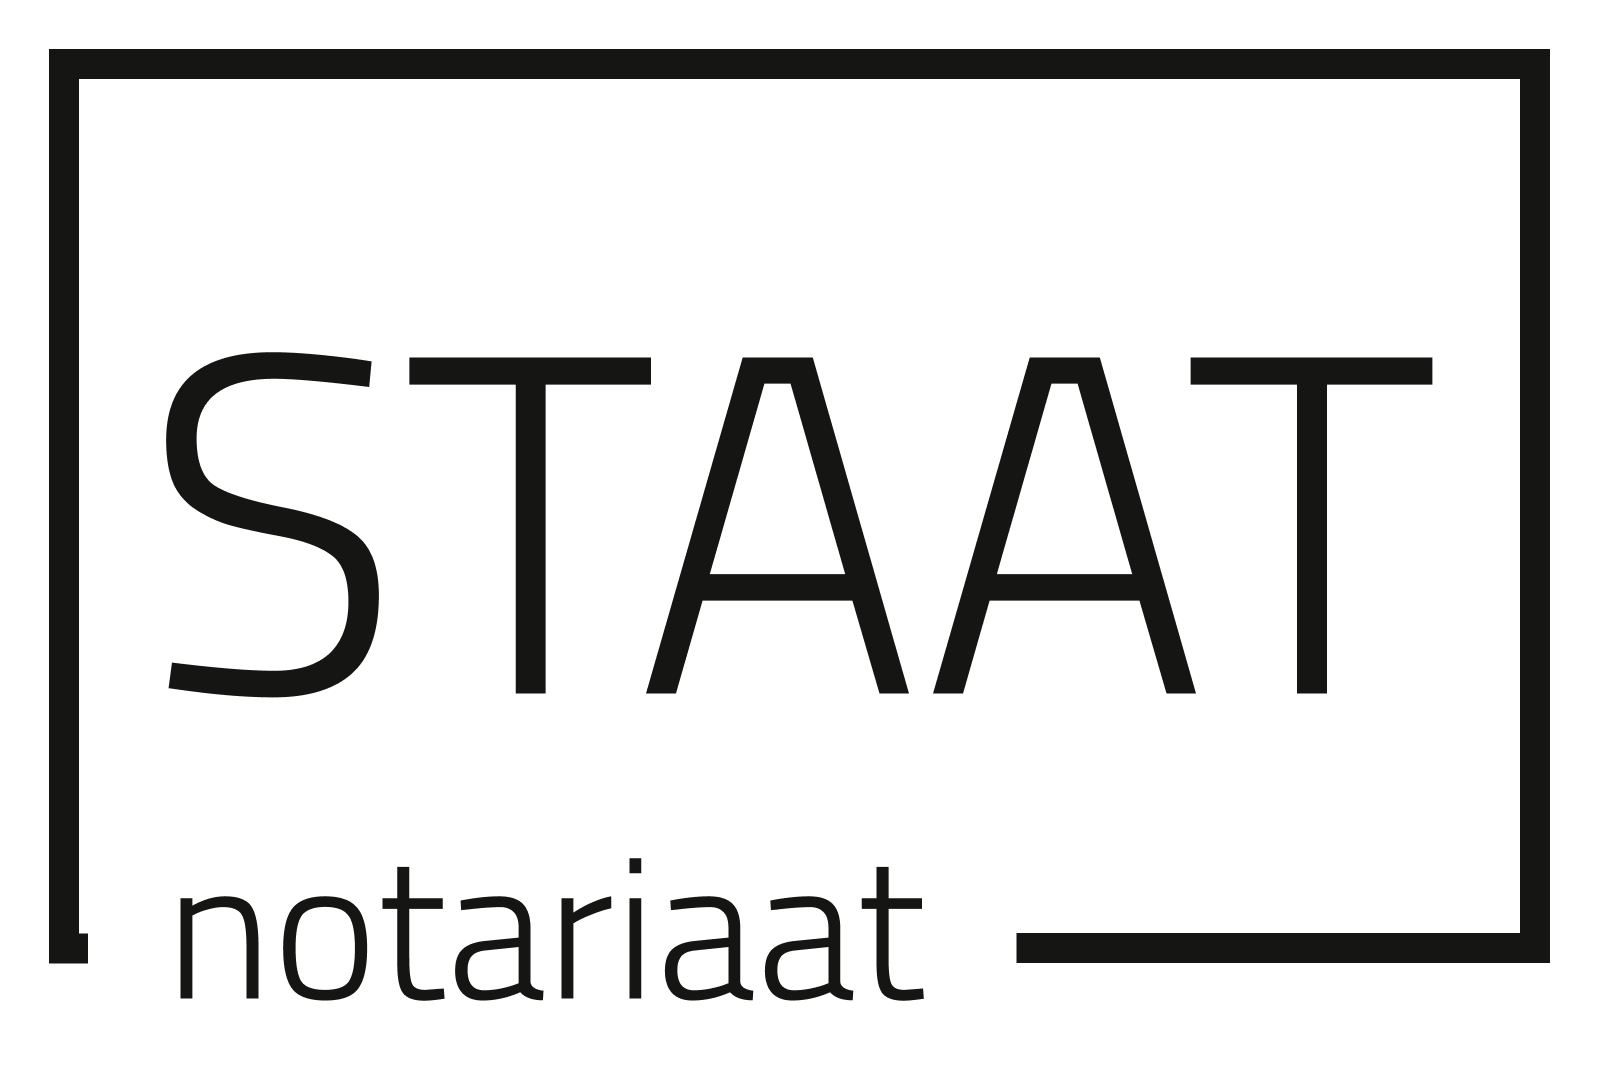 Staat notariaat Logo light